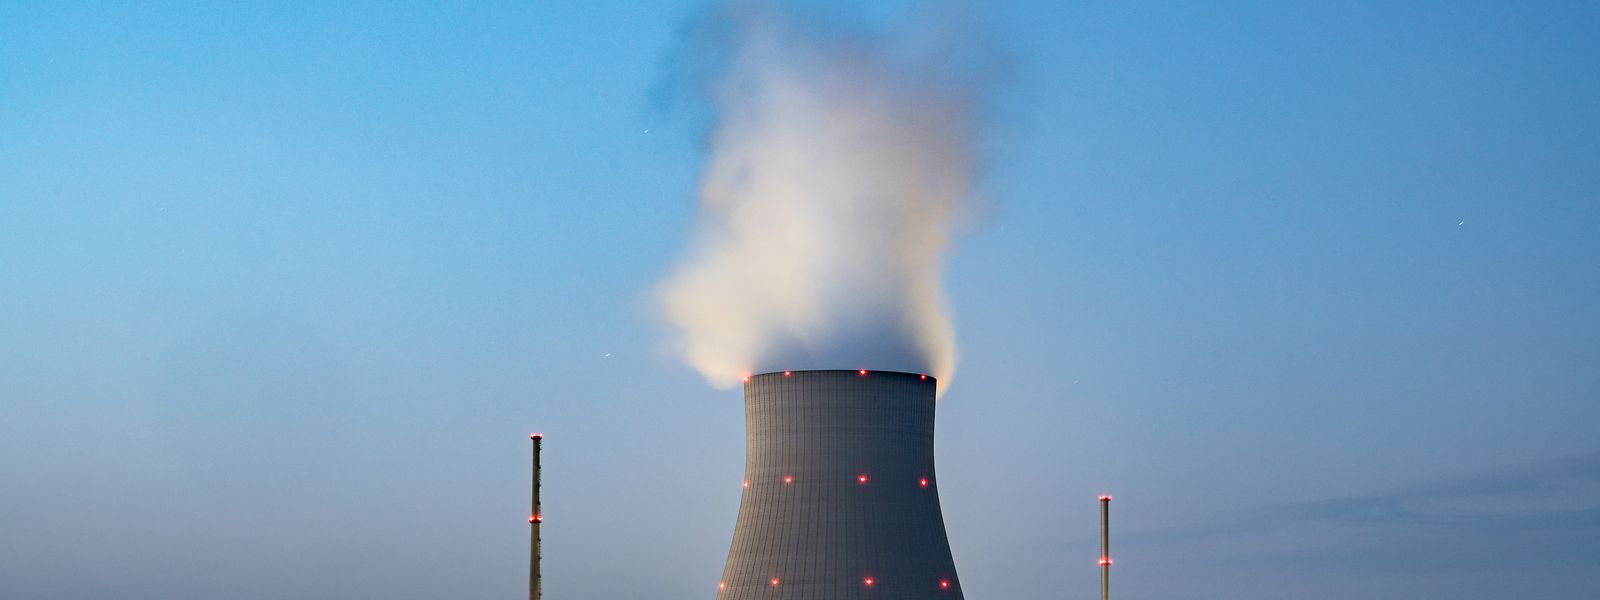 Der deutsche Bundeskanzler erwägt längere Laufzeiten für drei Atomkraftwerke, um die Stromversorgung in der Bundesrepublik zu sichern.